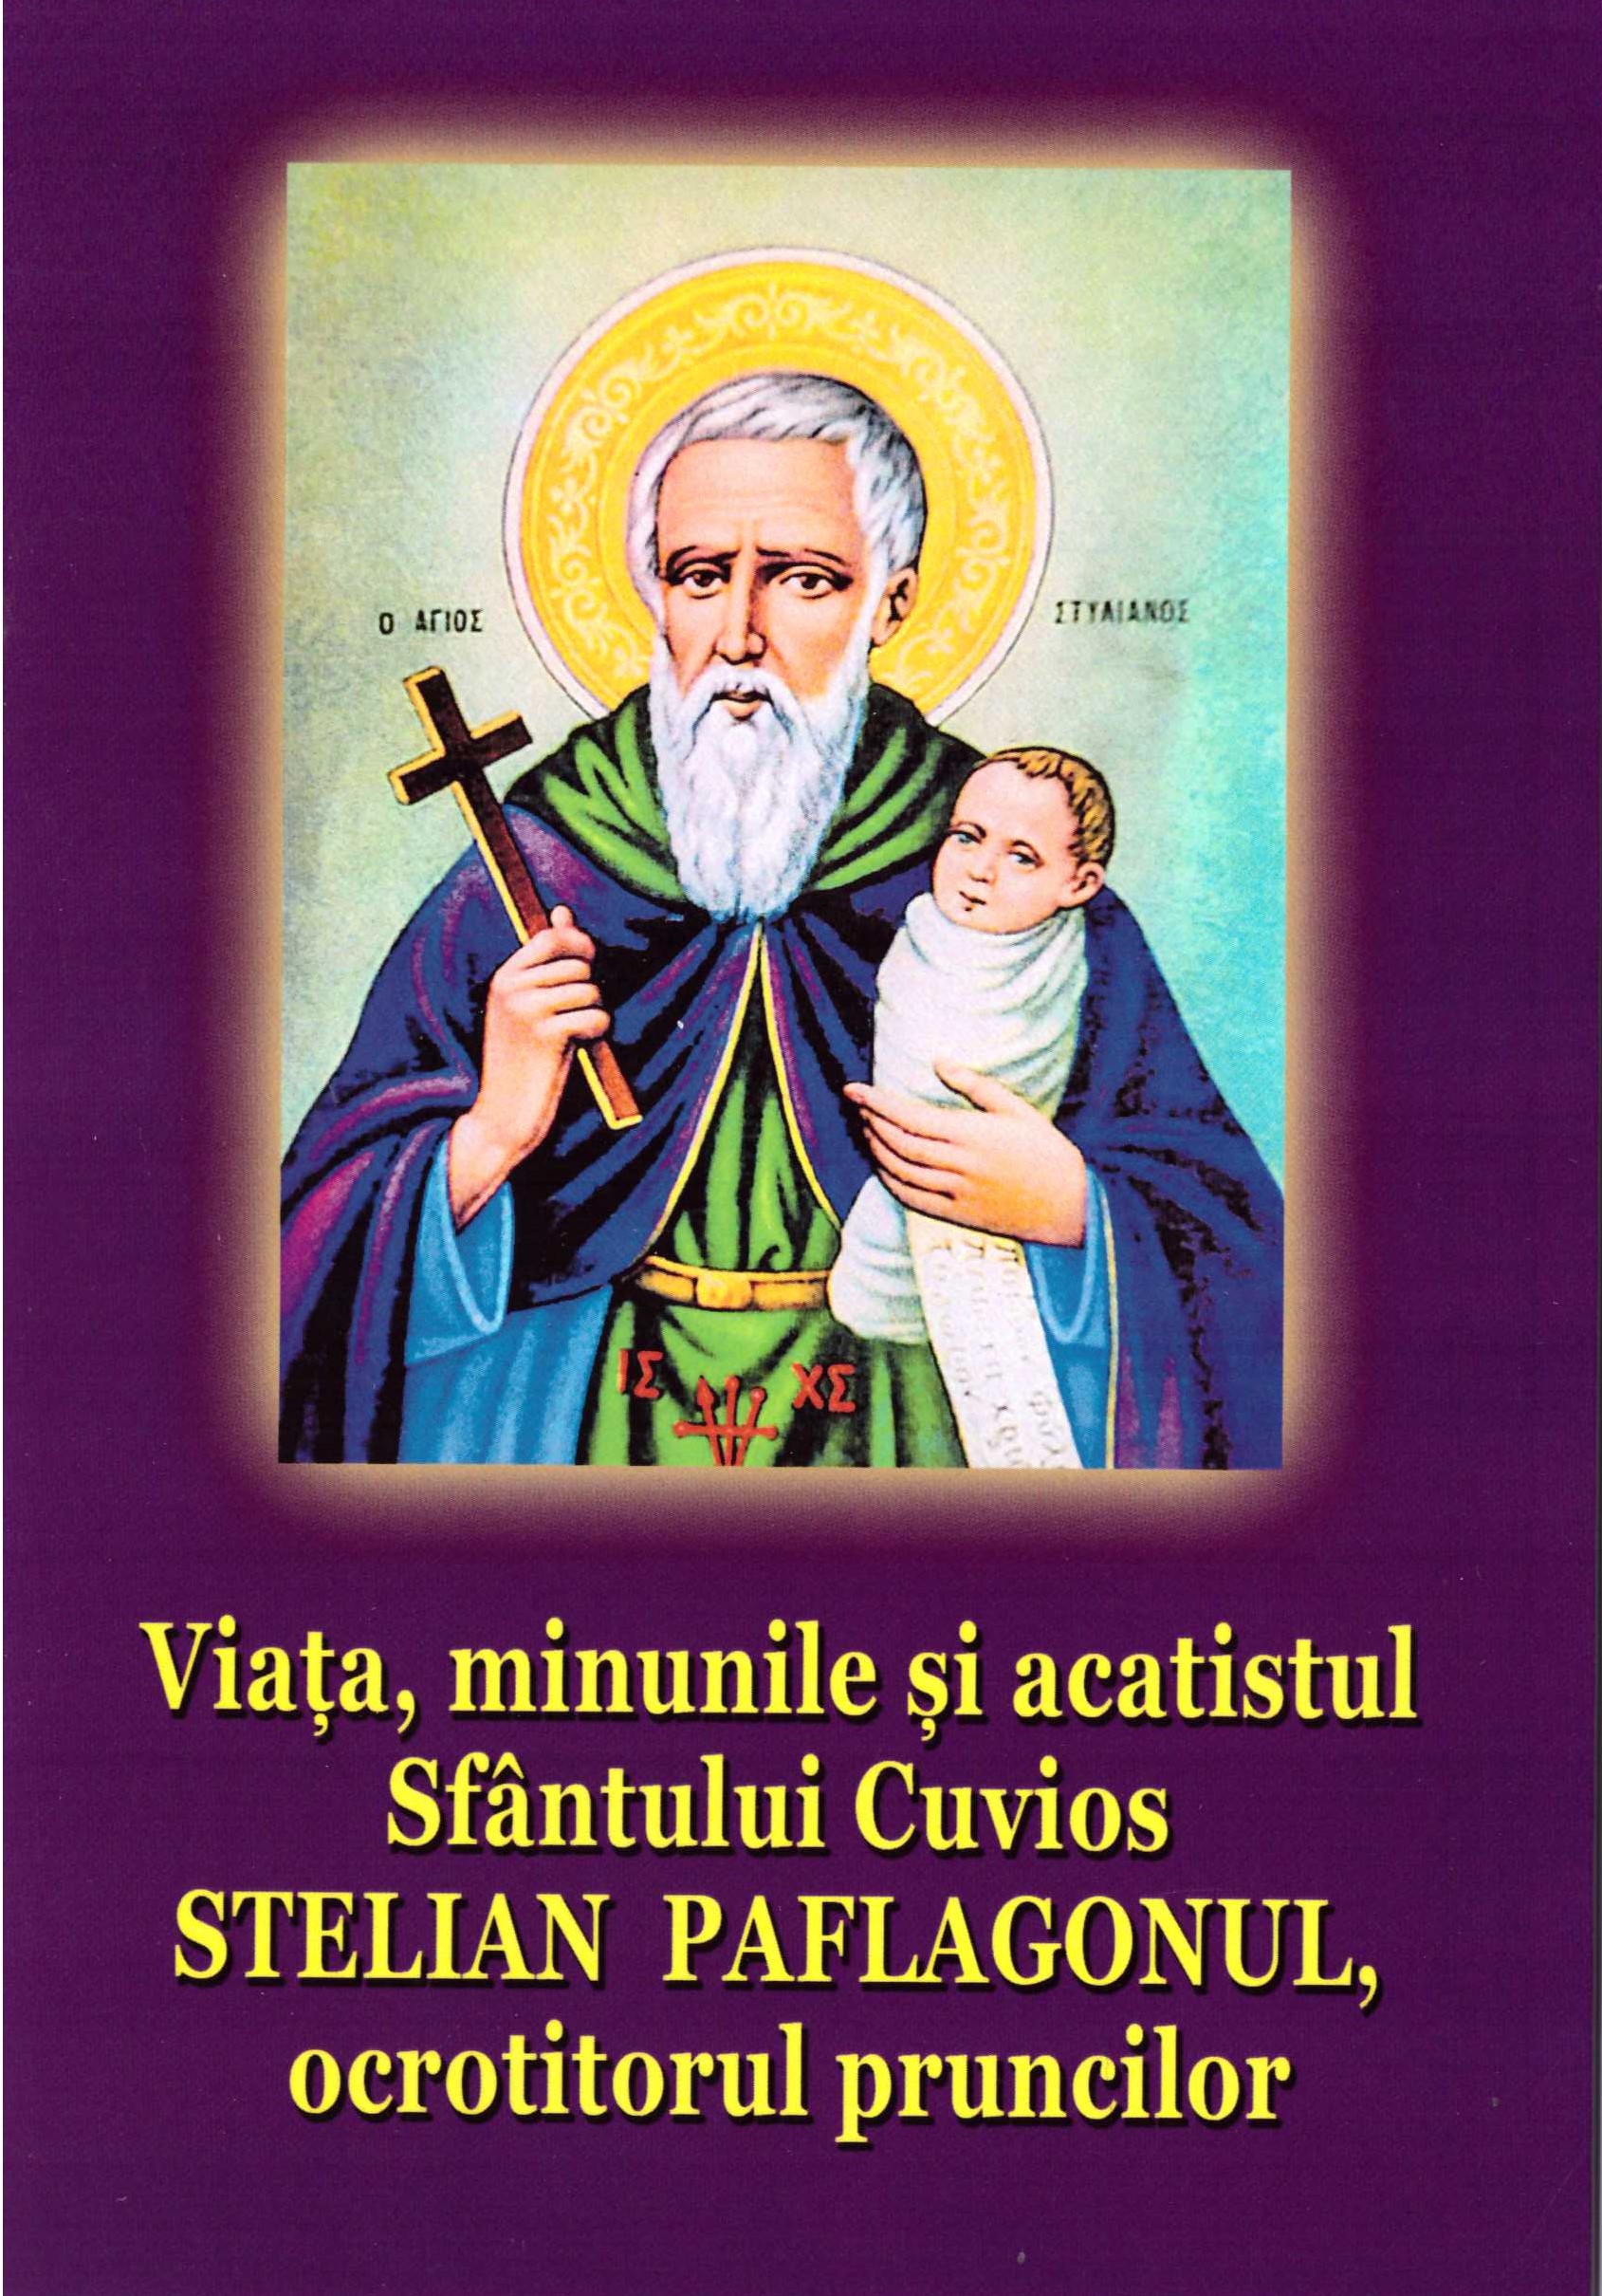 Viața, minunile și acatistul Sfântului Cuvios Stelian Paflagonul, ocrotitorul pruncilor